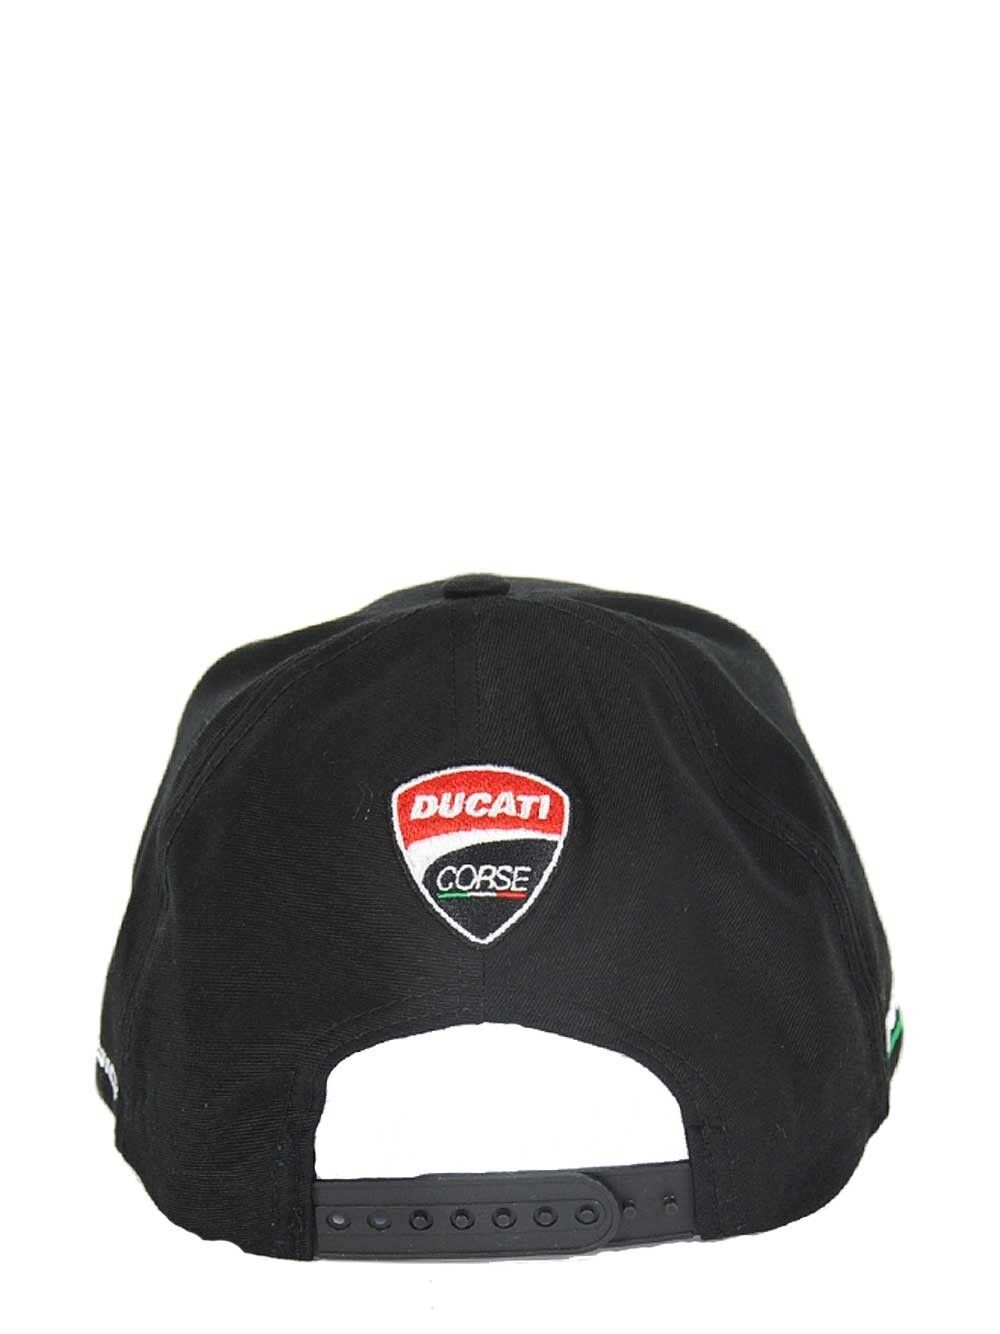 Official Ducati Arrow Baseball Cap - 16 46007